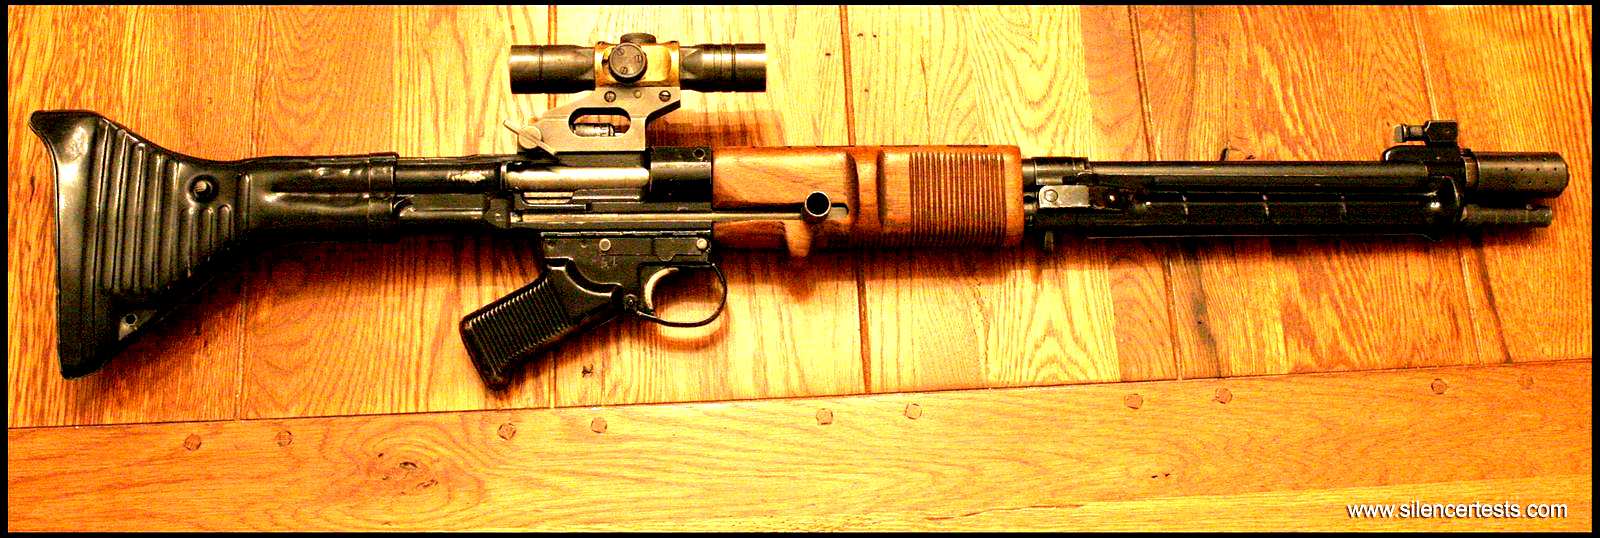 Типа мп. Немецкая автоматическая винтовка FG 42. Немецкая винтовка ФГ 42. Штурмовая винтовка FG-42. Немецкая десантная винтовка FG-42.